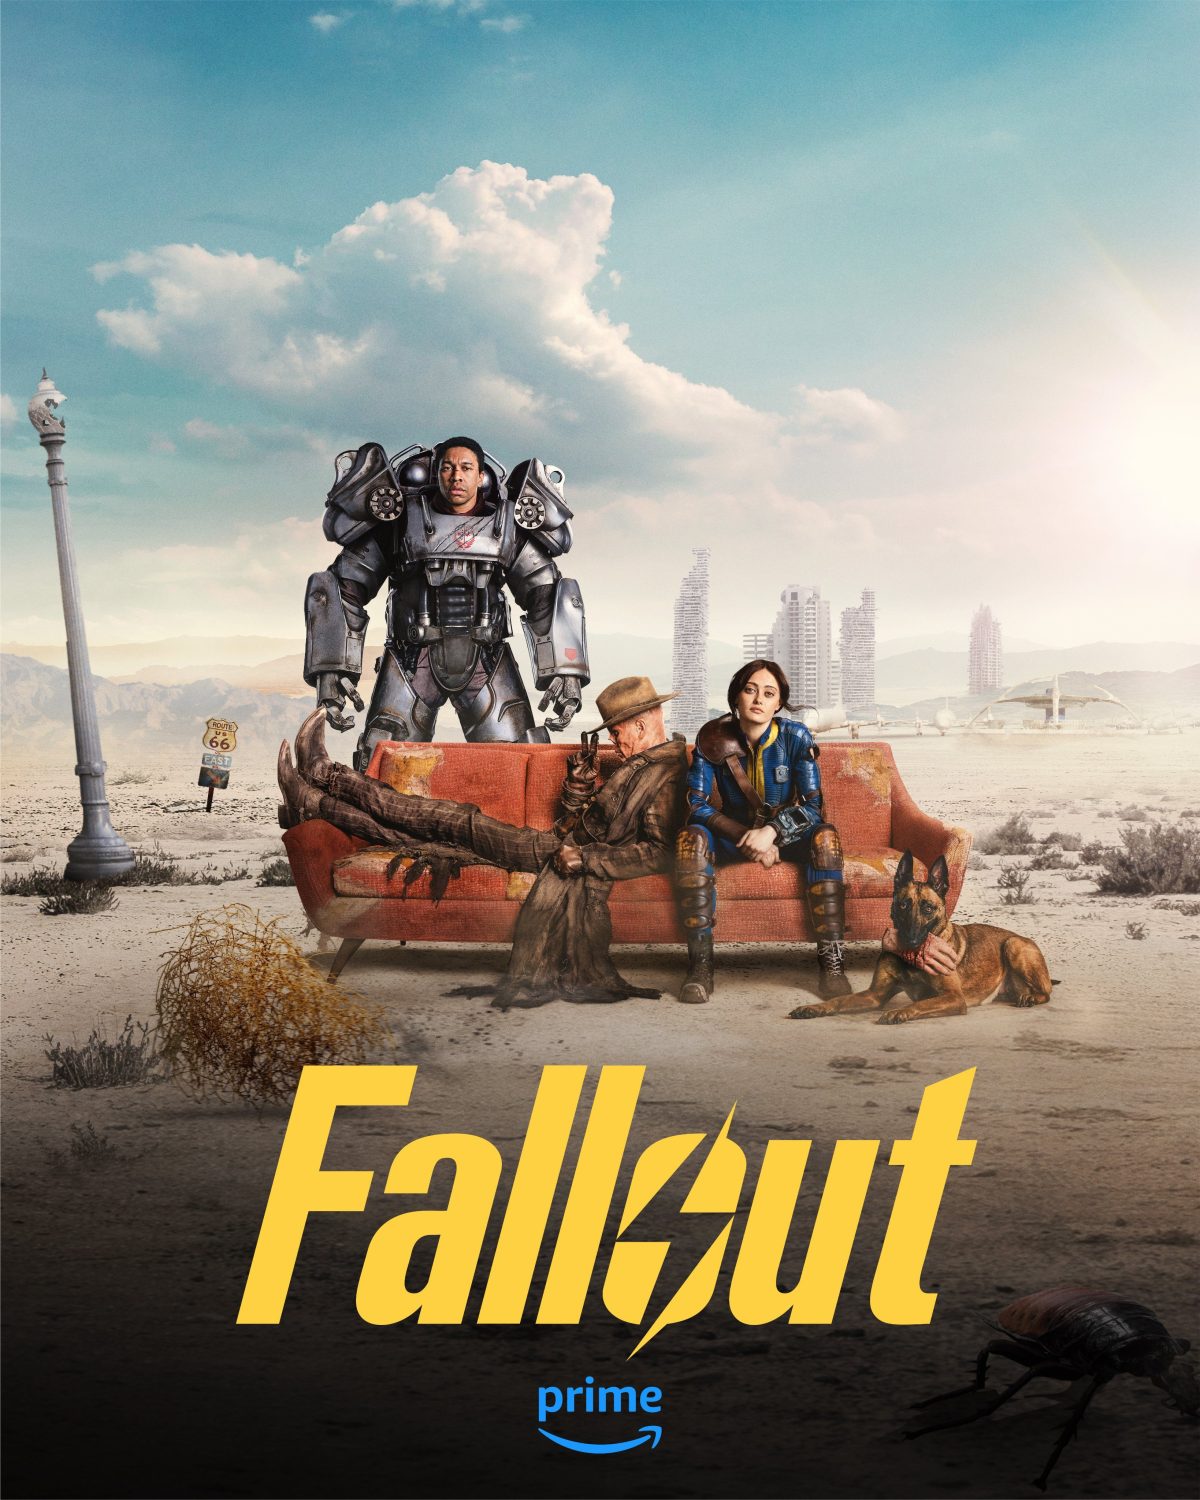 名作オープンワールド『Fallout 3: Game of the Year Edition』、Amazon Primeユーザー向けに無料配布中（6月13日まで） image